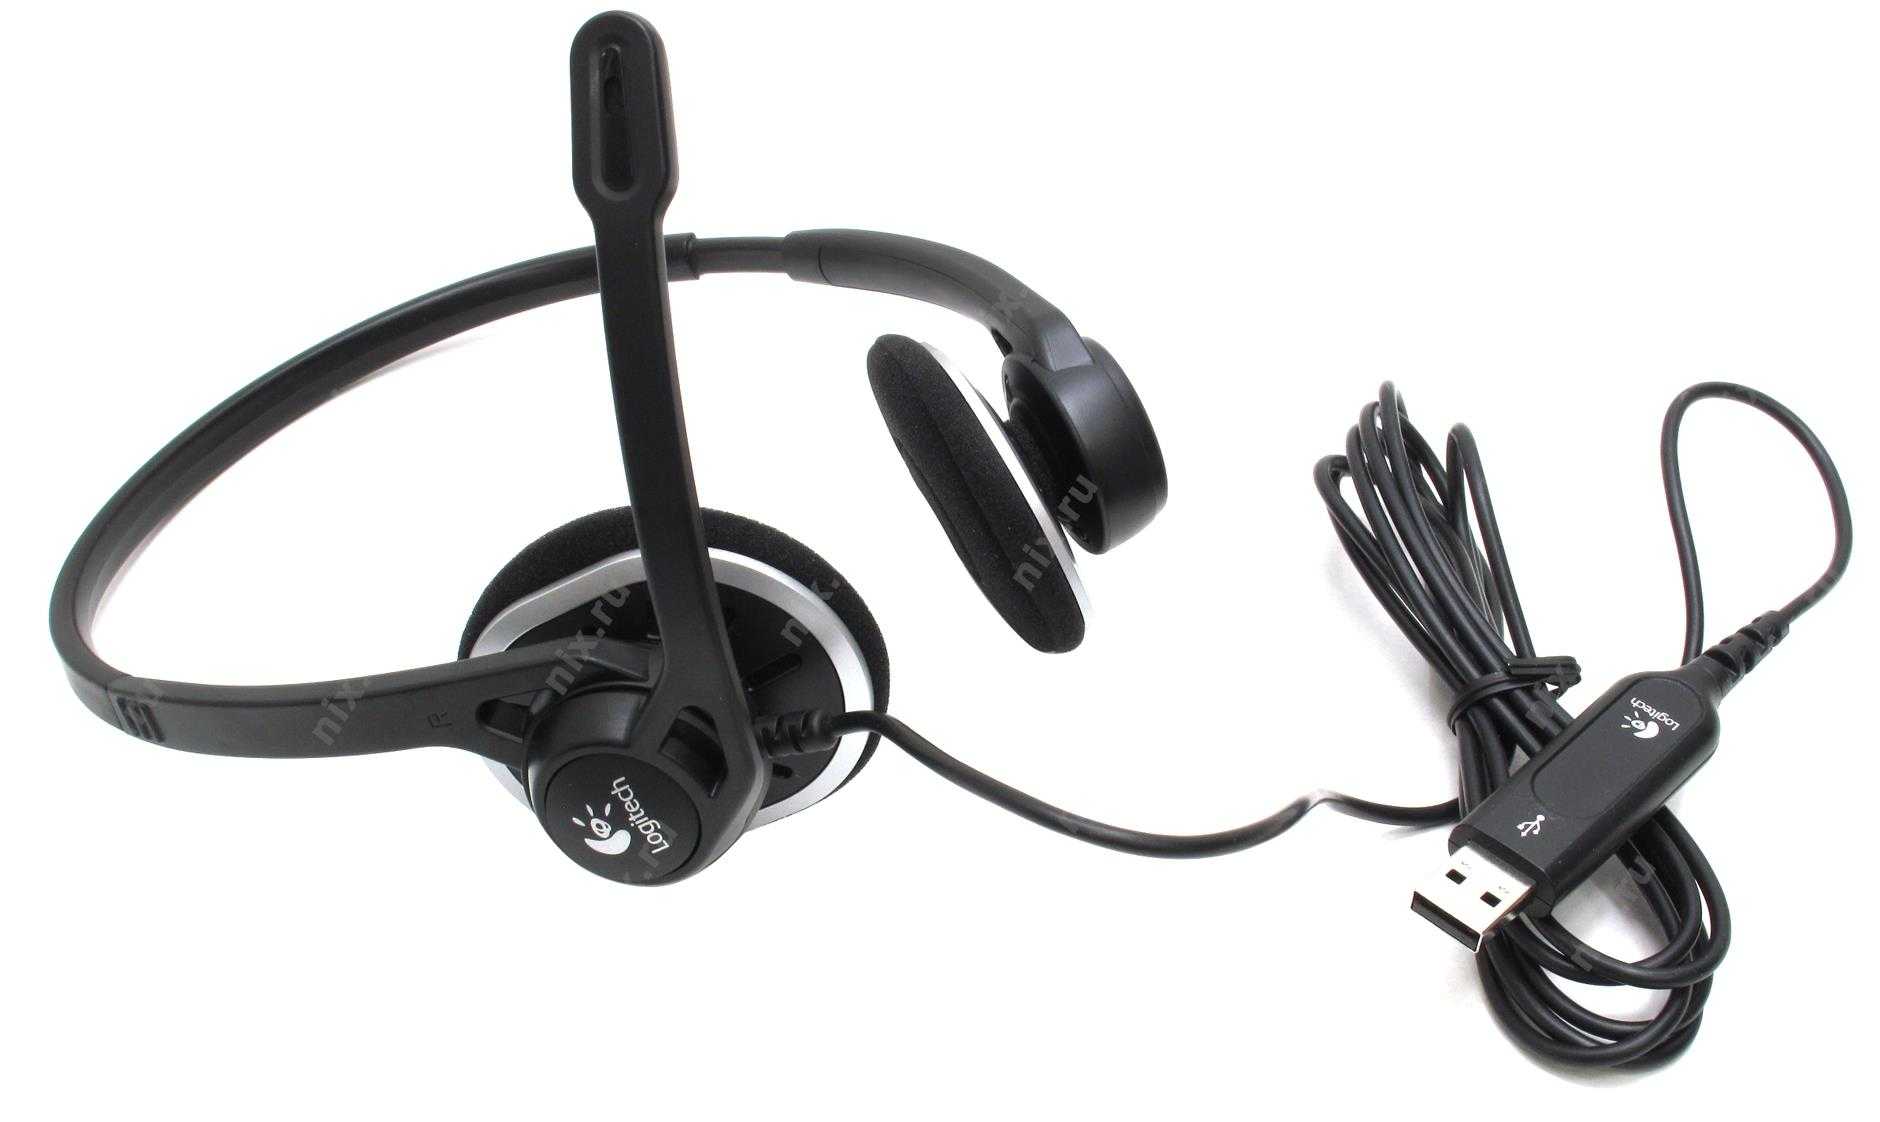 Logitech h330 usb headset купить по акционной цене , отзывы и обзоры.